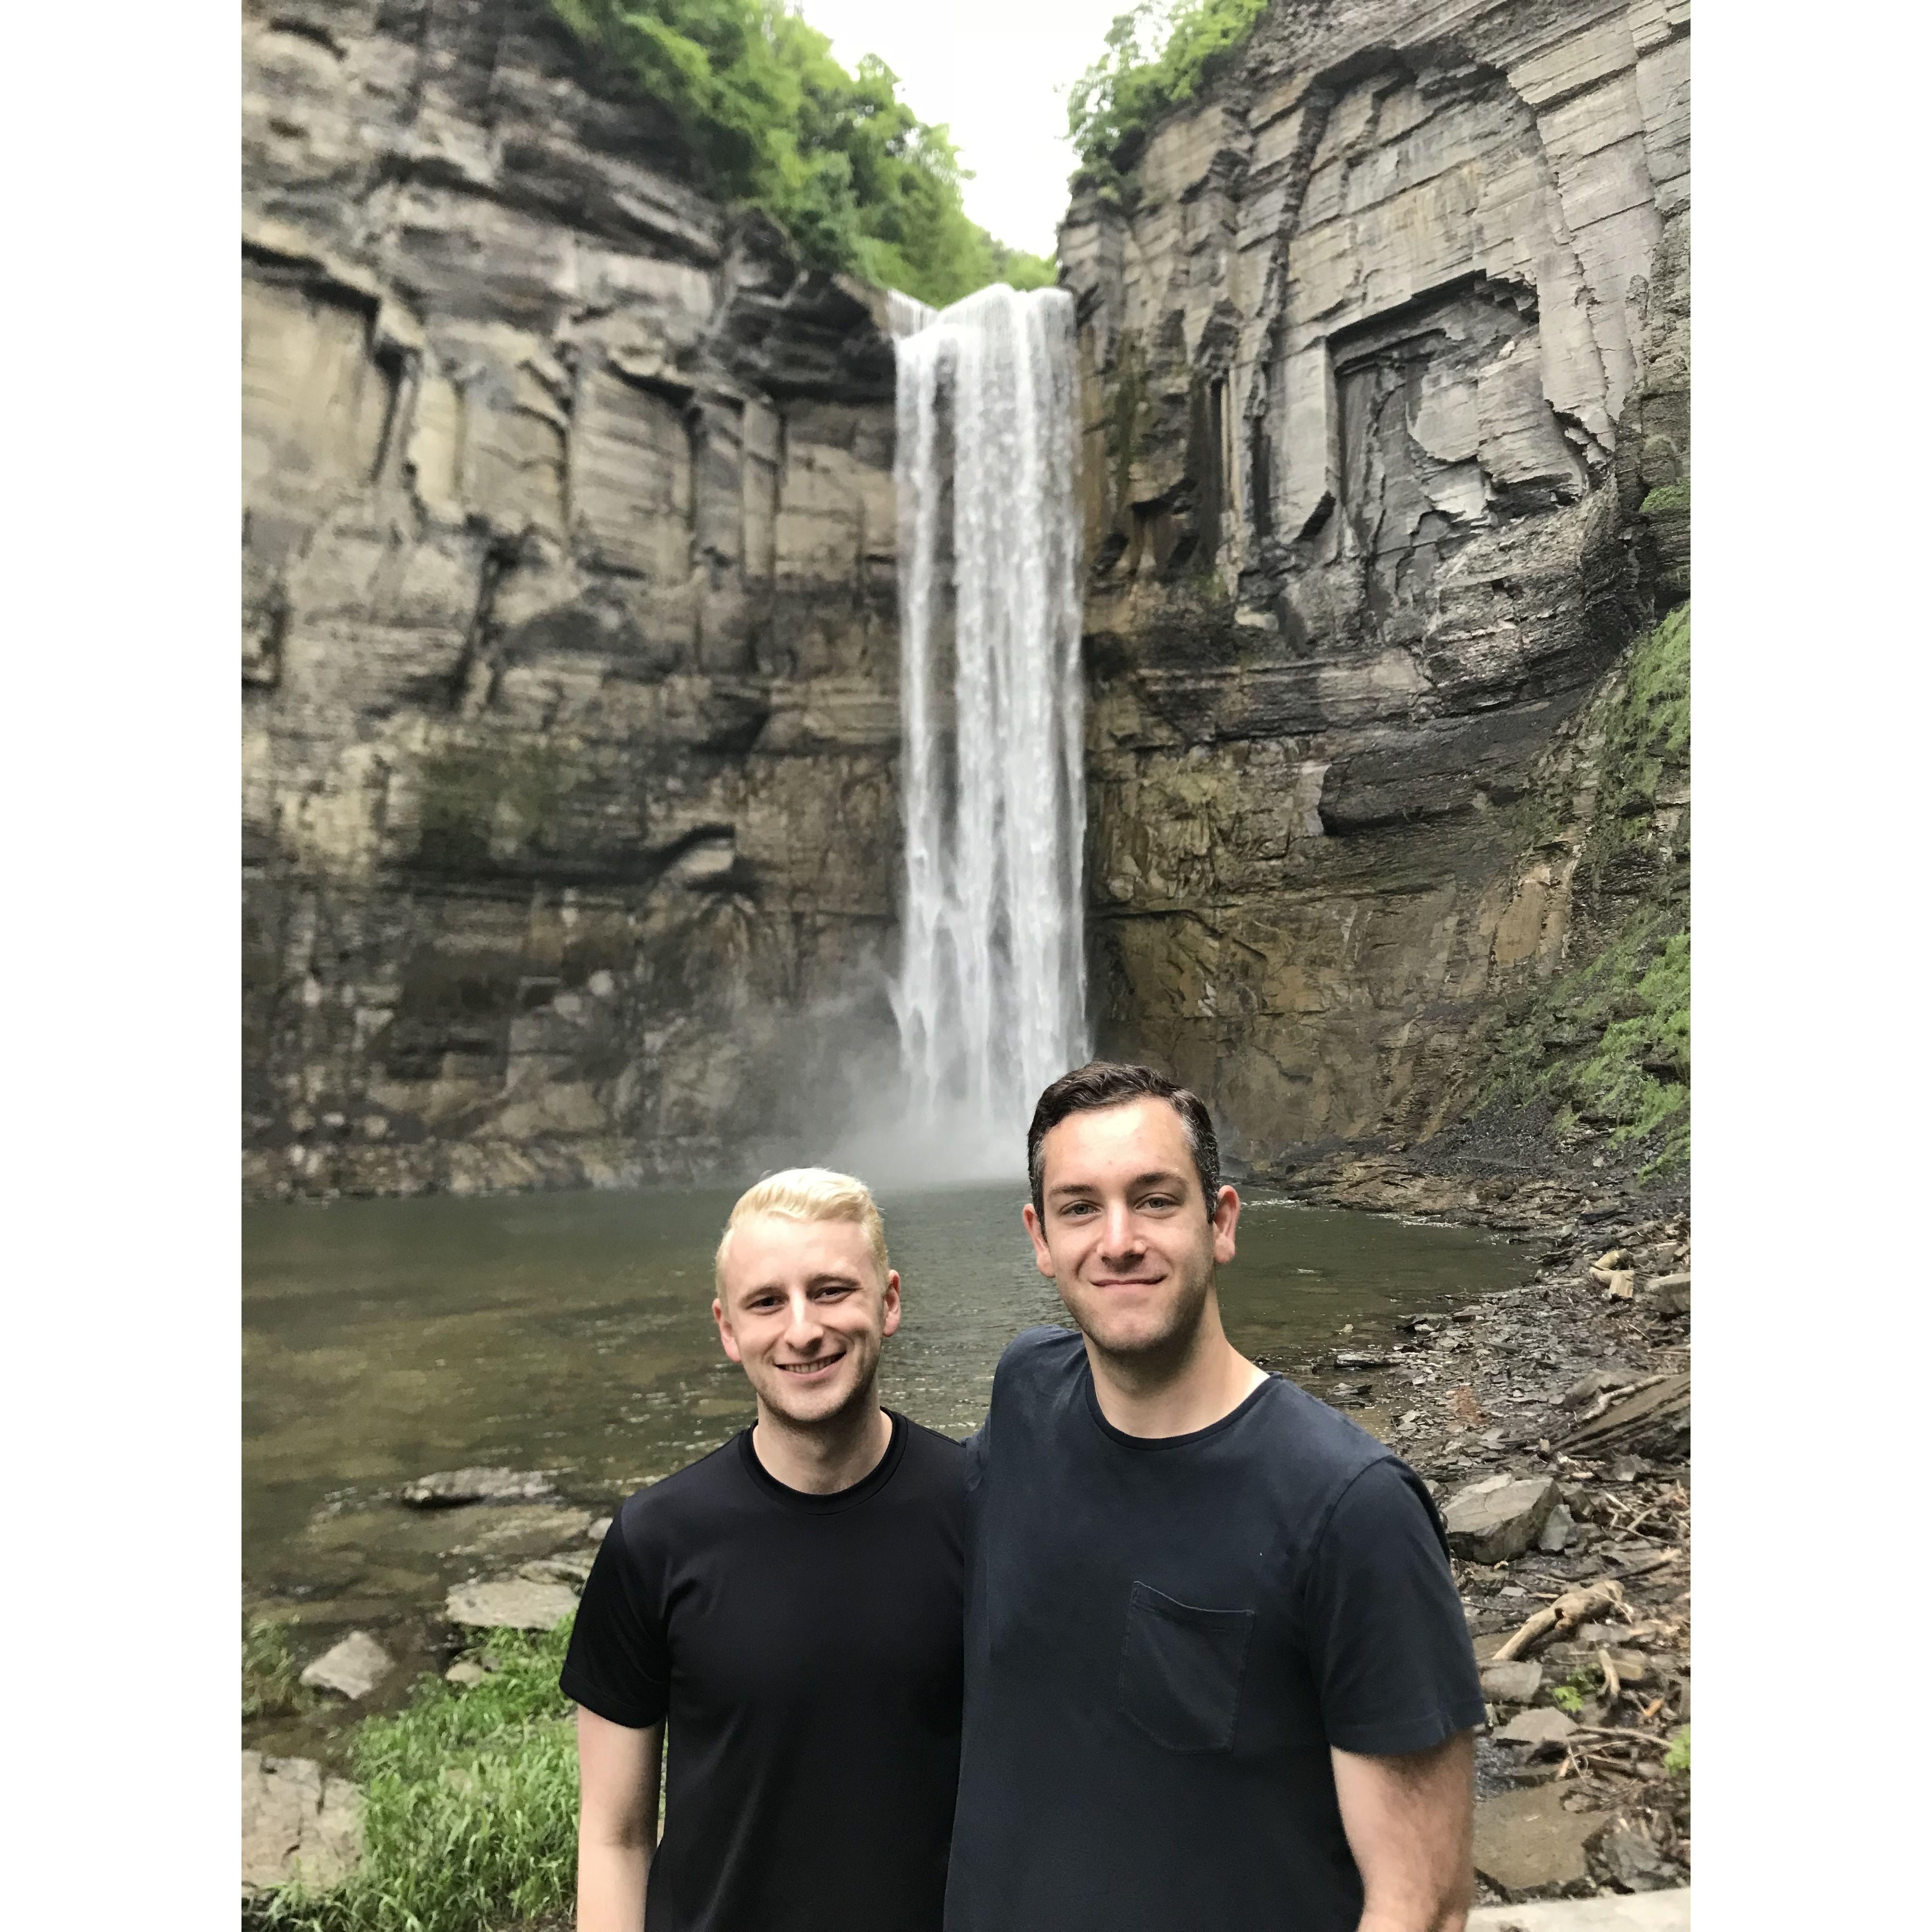 May 2018 
Exploring upstate NY